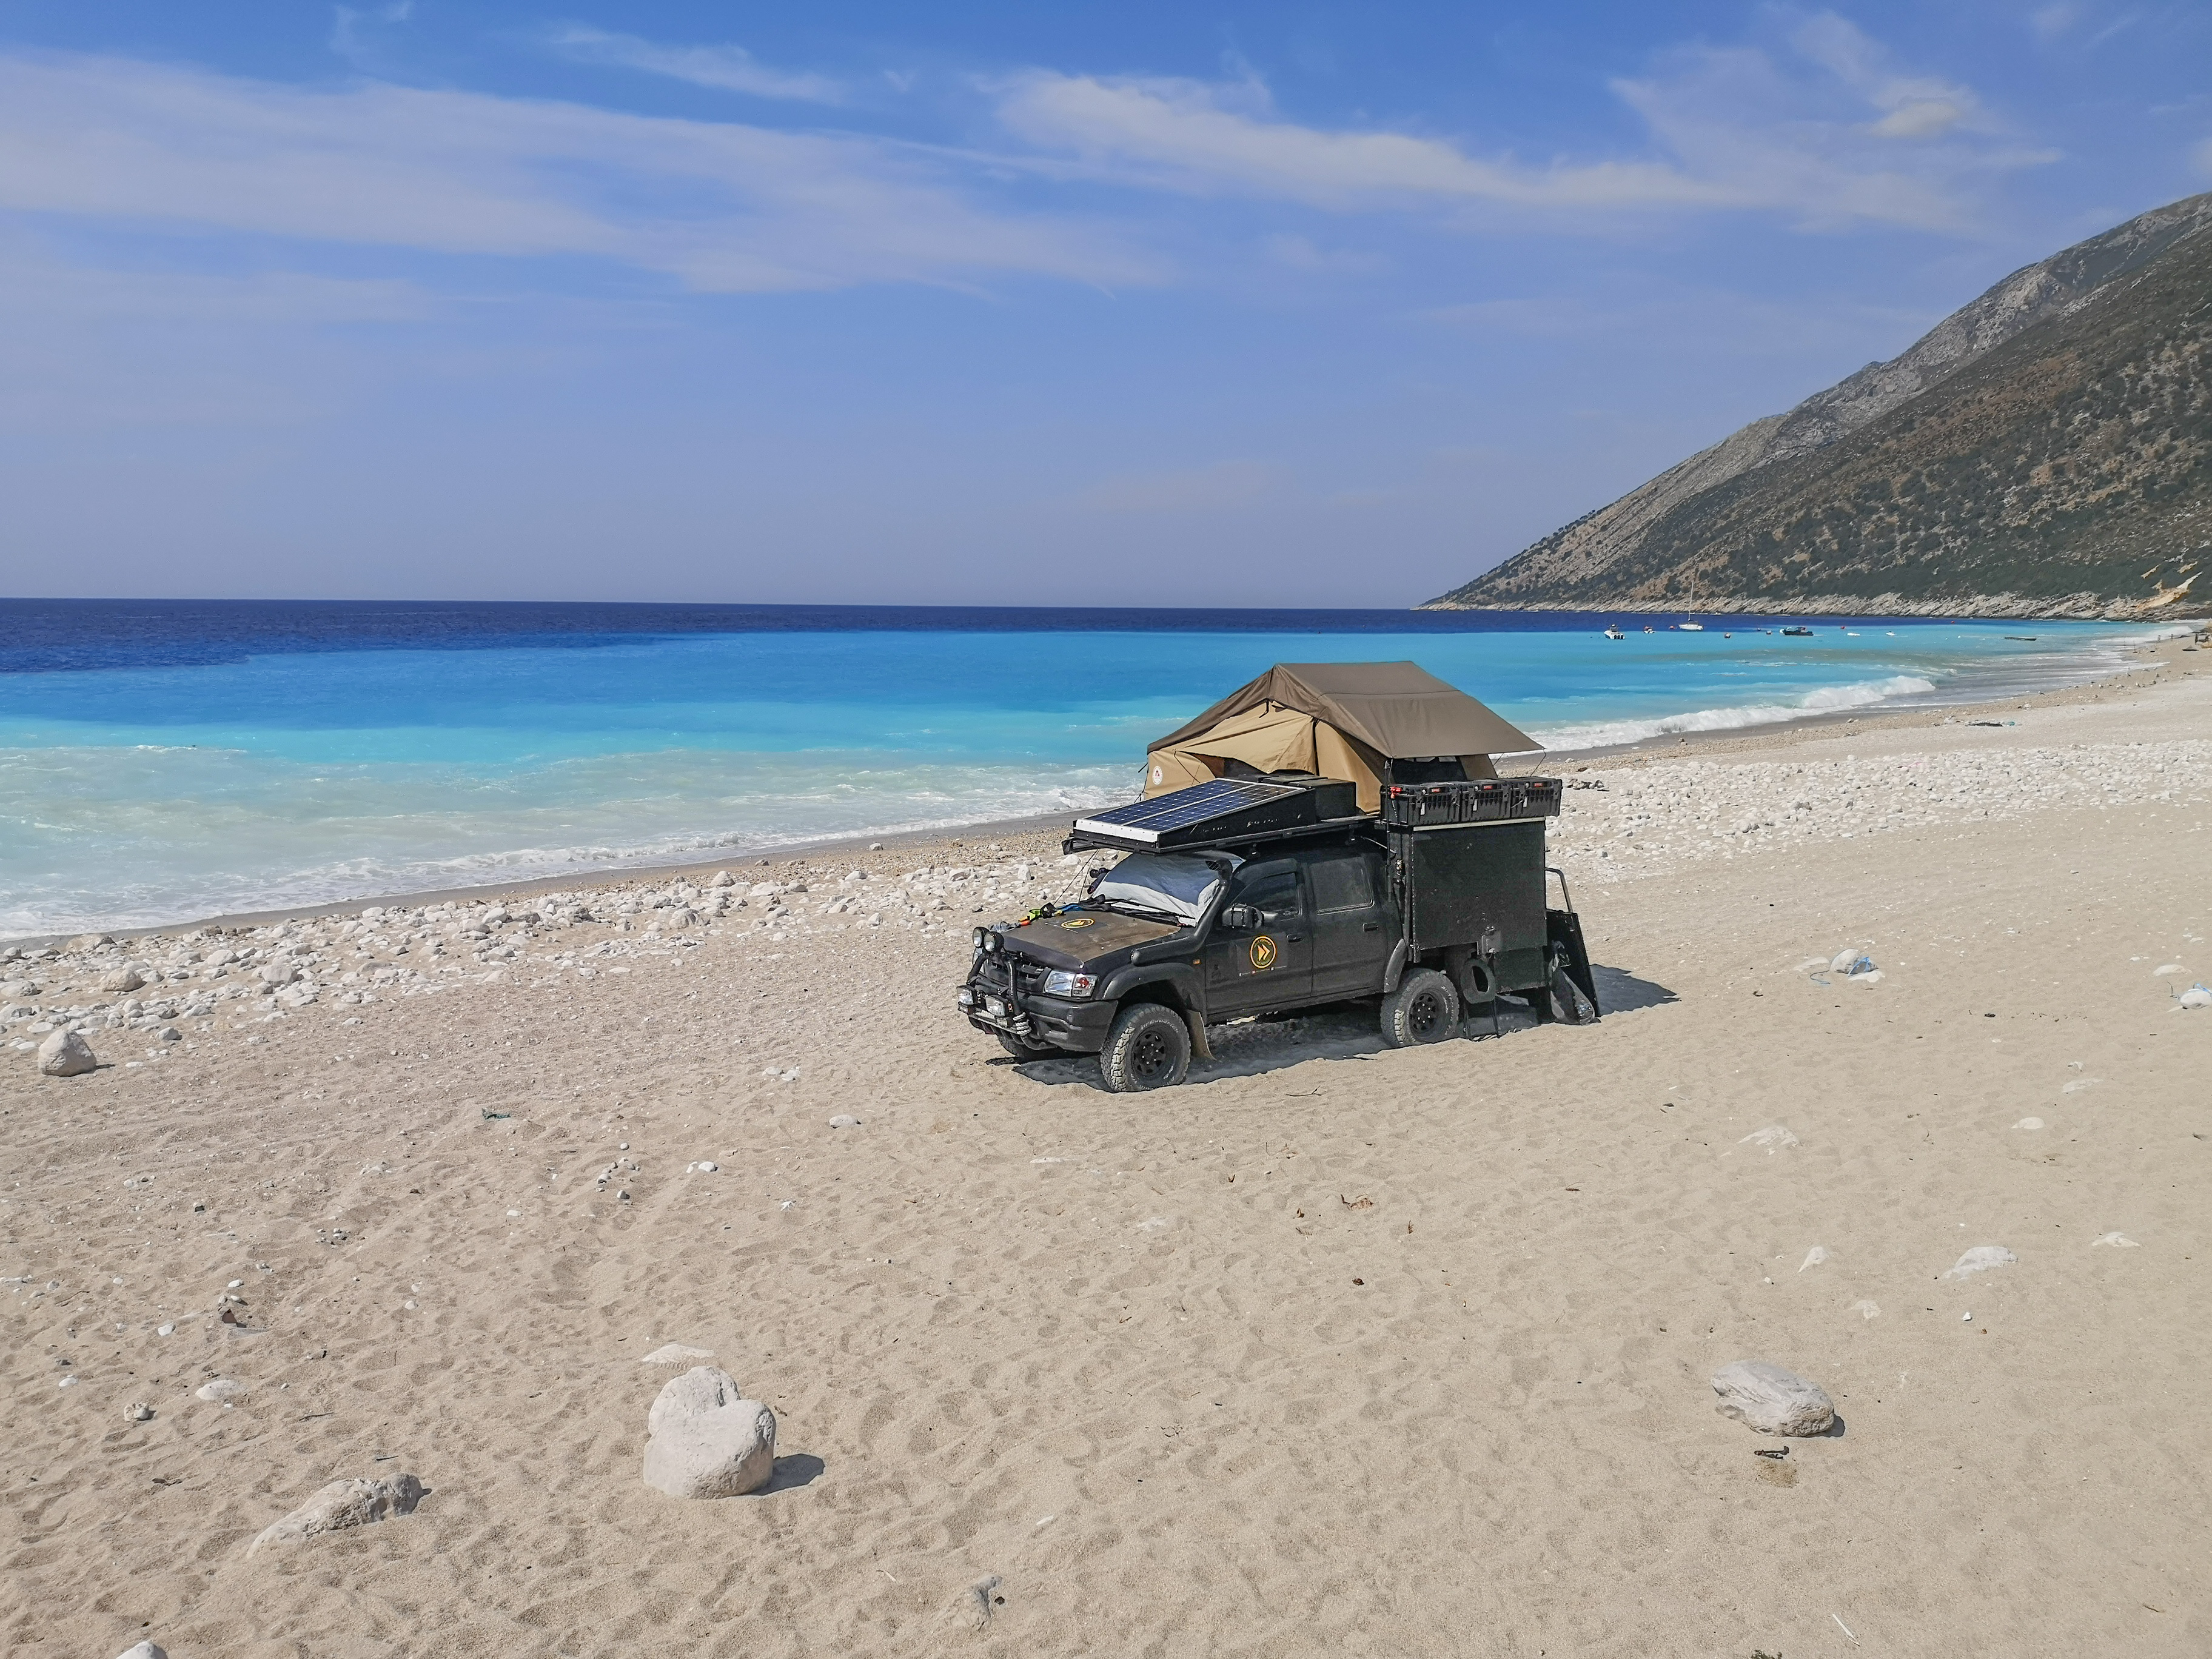 Nocleg, samochód terenowy na plaży w Albanii. Obozowanie, spanie  na dziko.
4x4 truck on a beach in Albania. Wild camping, sleeping, free camping.